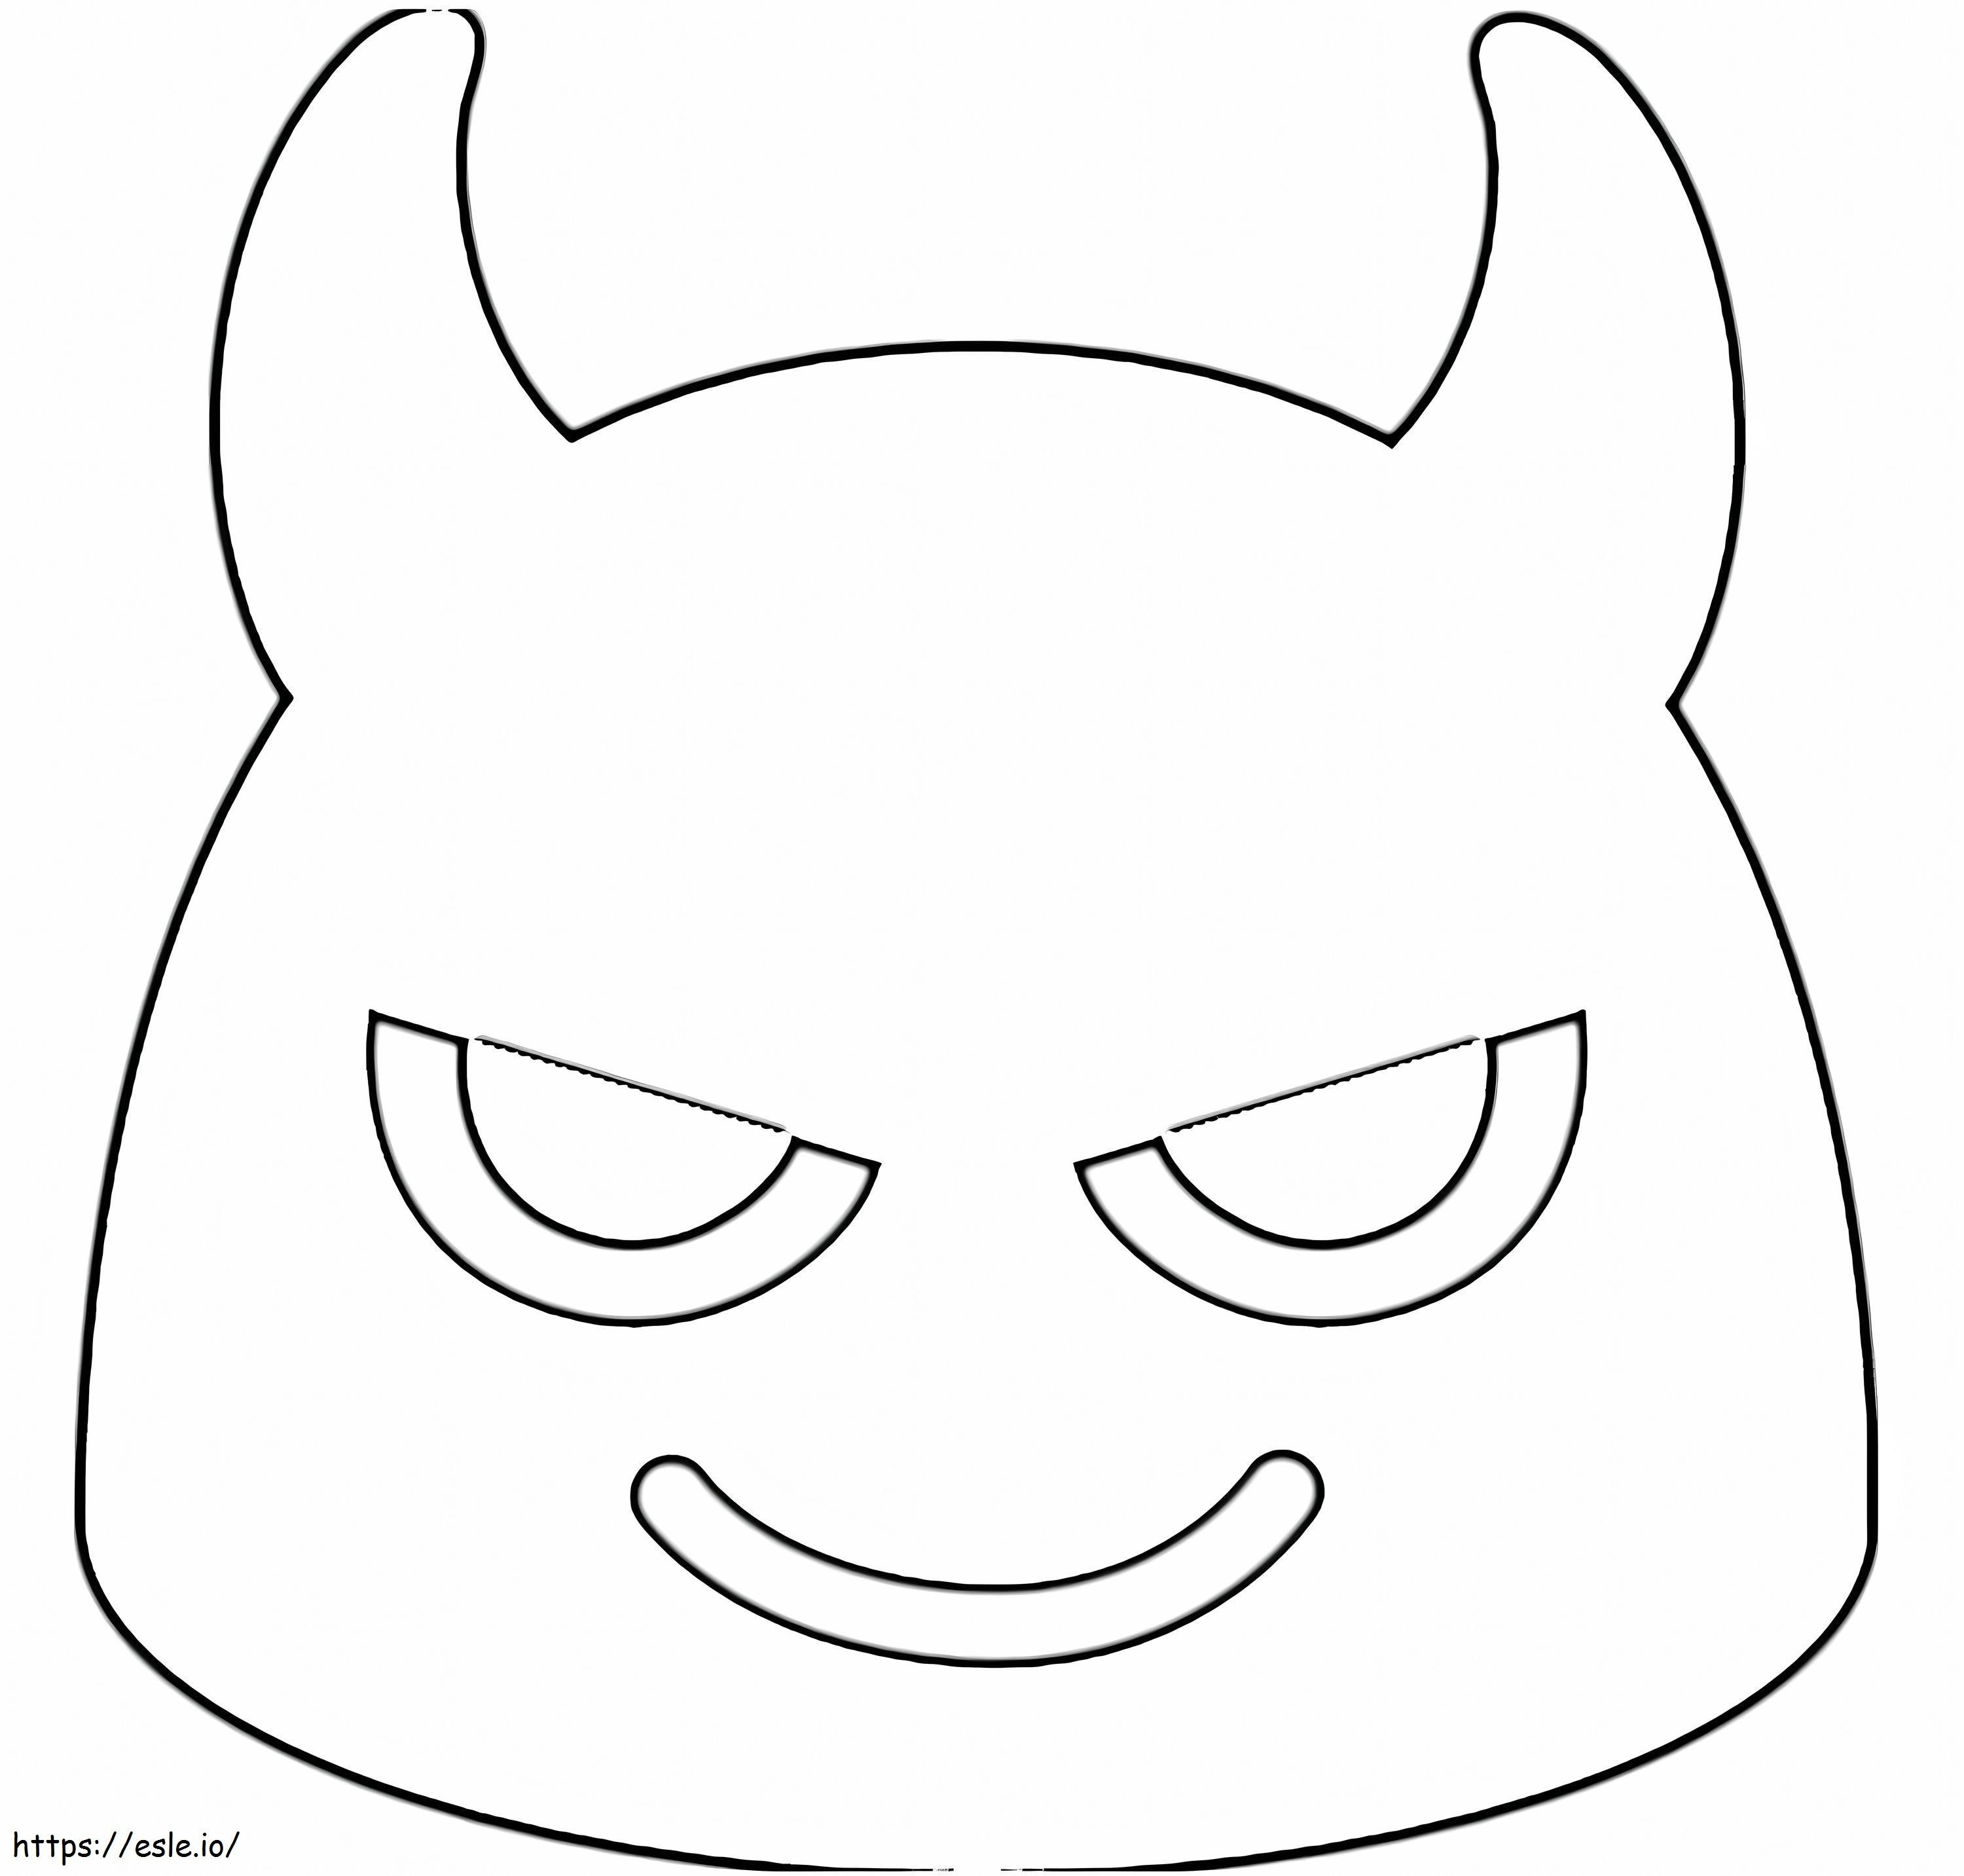 Diablo Emoji coloring page